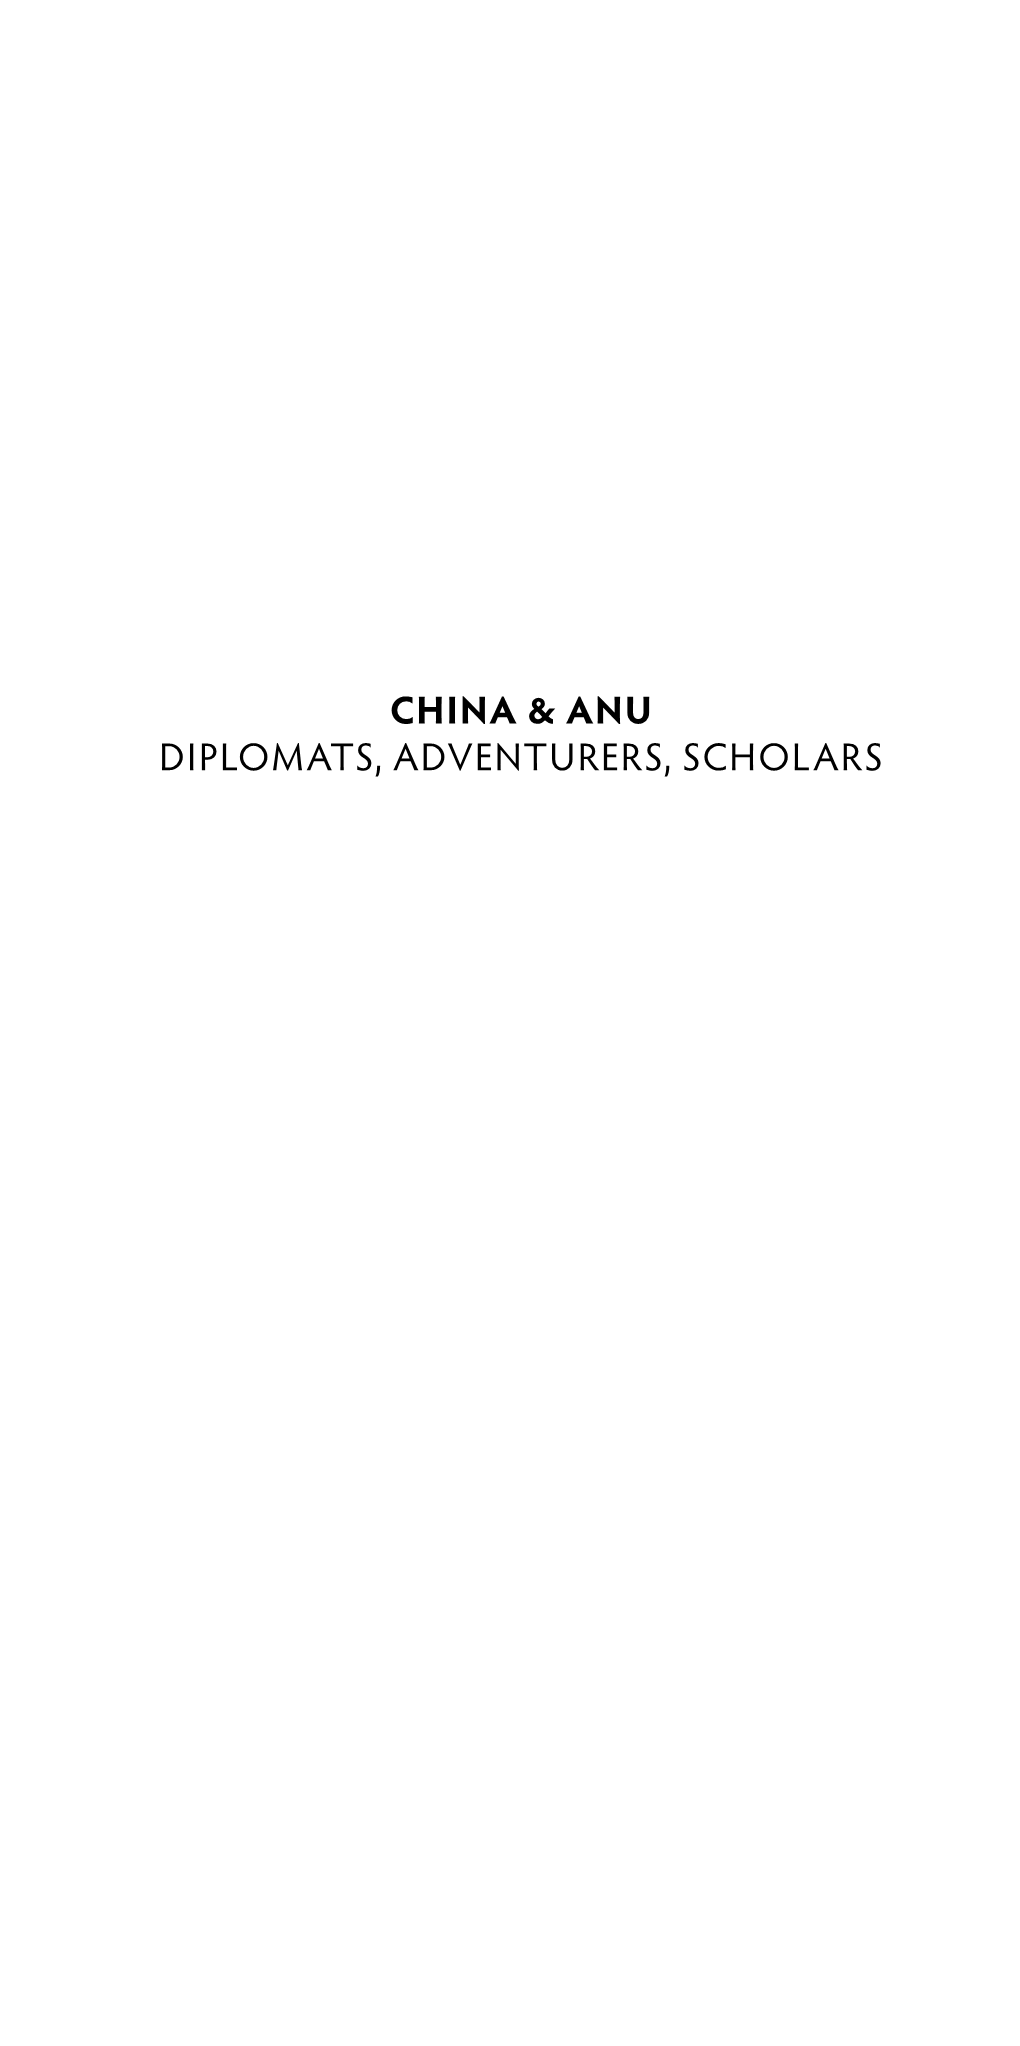 China & ANU: Diplomats, Adventurers, Scholars